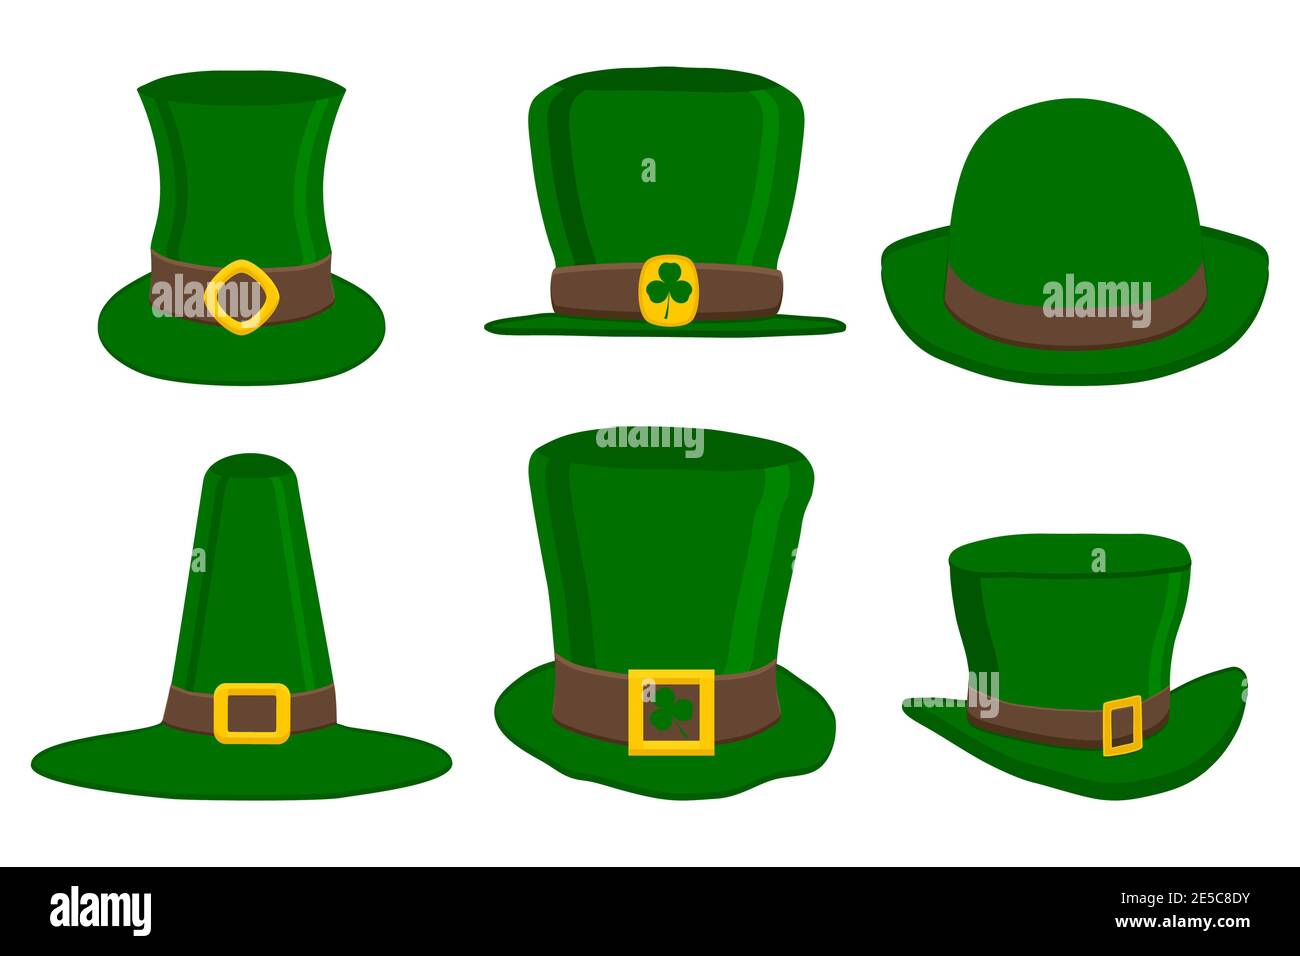 Ilustración sobre el tema vacaciones irlandesas día de San Patricio, establecer sombreros de tocados. Patrón día de San Patricio que consiste en muchos sombreros diferentes verdes en el backgr blanco Ilustración del Vector